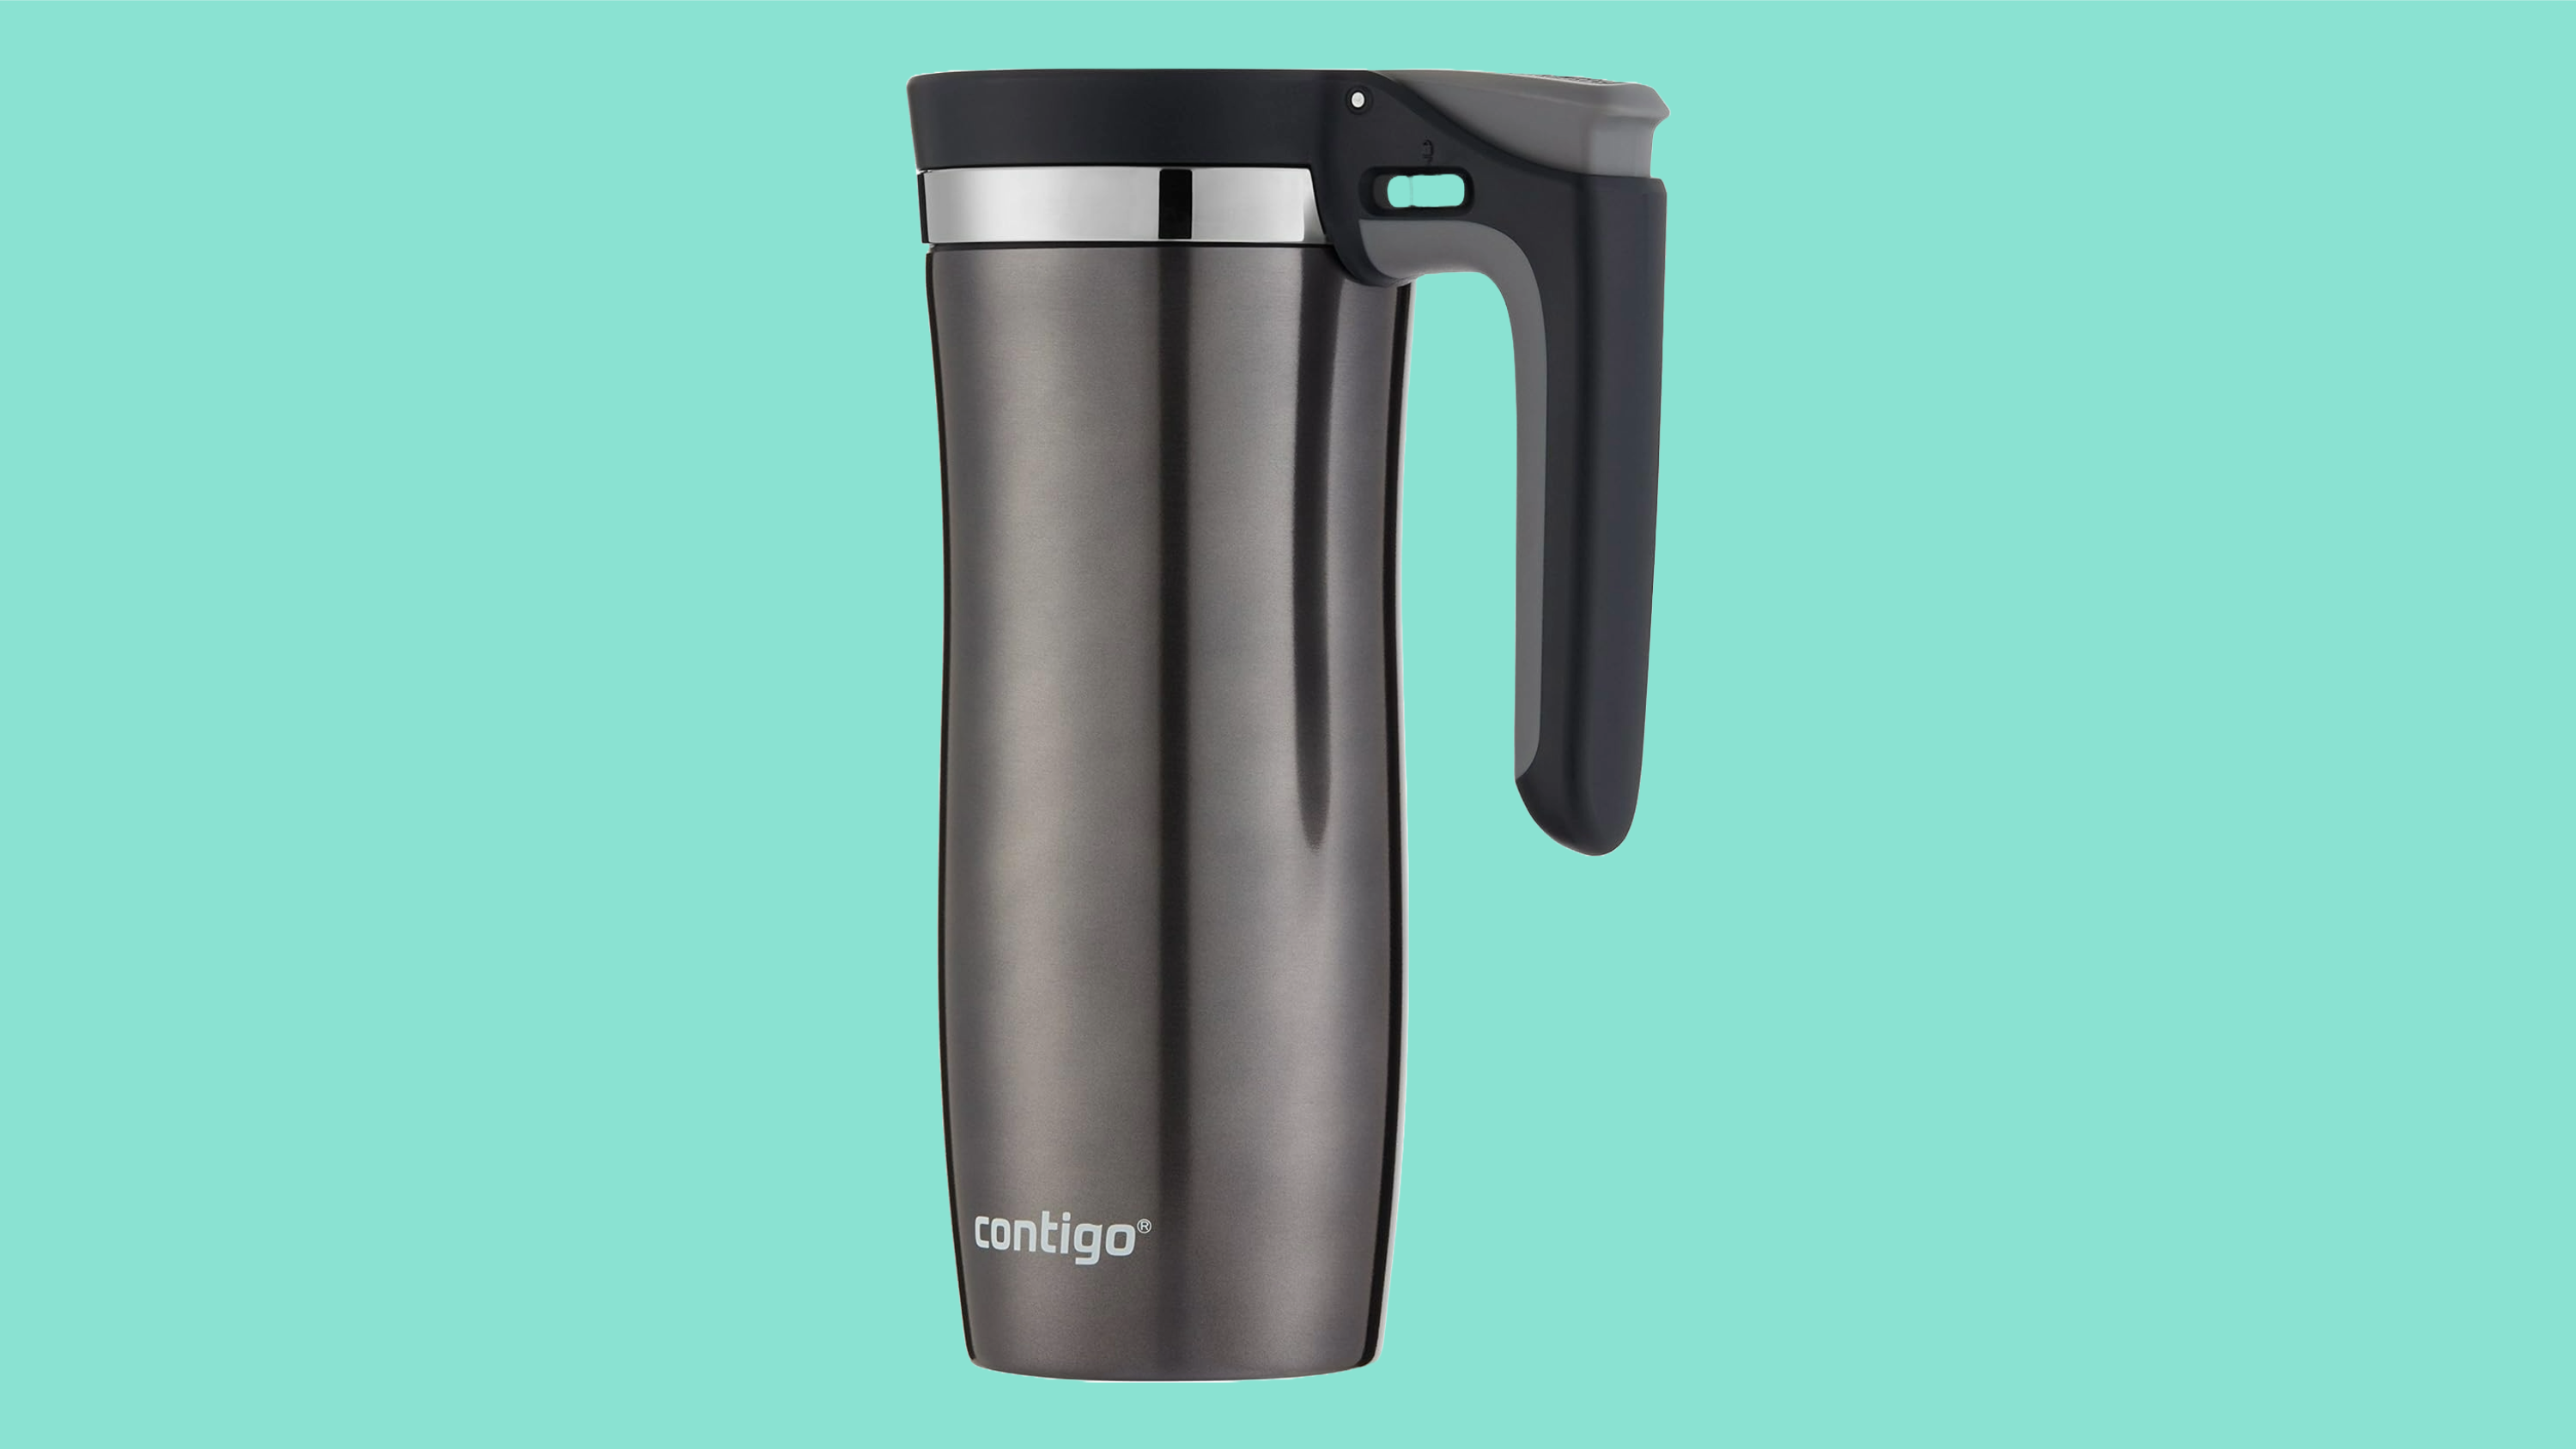 Product image of the Contigo Handled Autoseal Travel Mug